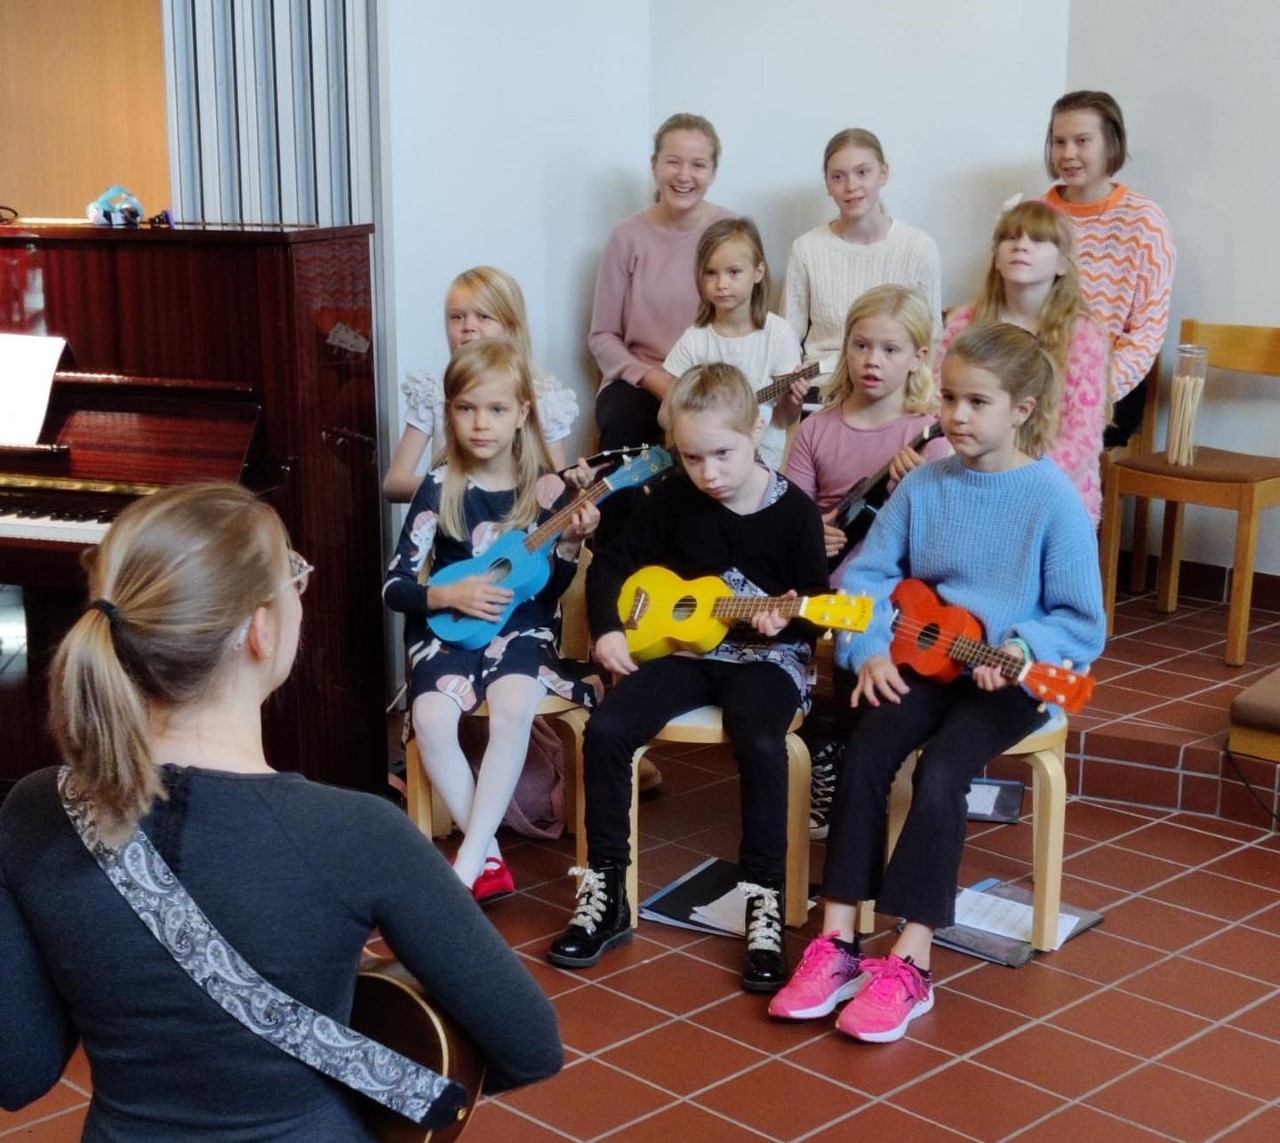 Lapsikuoro Kuunloiste soittaa ukulelejä.